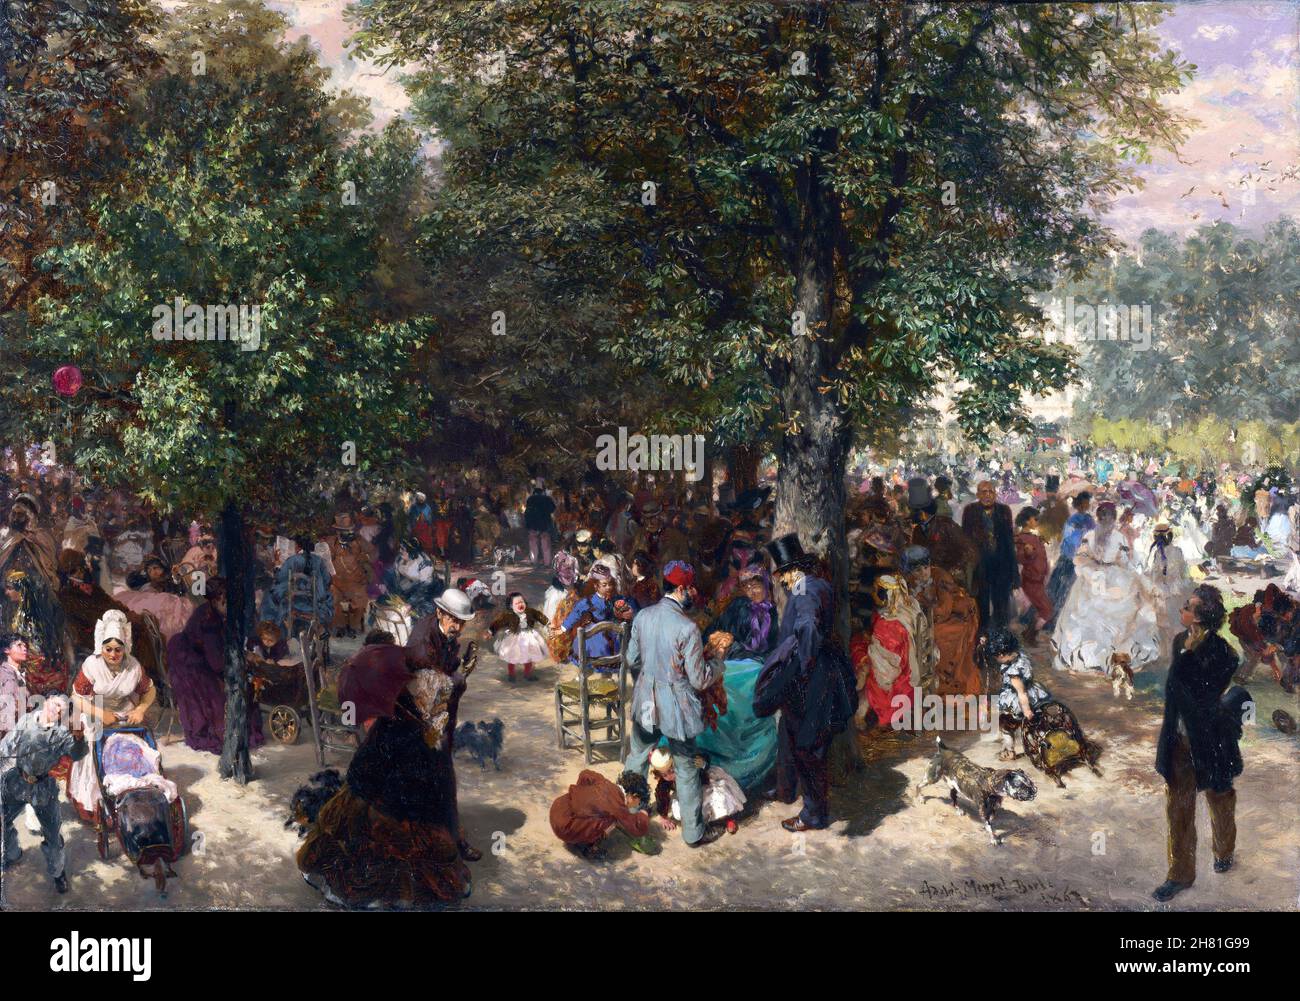 Après-midi dans les jardins des Tuileries par Adolph von Menzel (1815-1905), huile sur toile, 1867 Banque D'Images